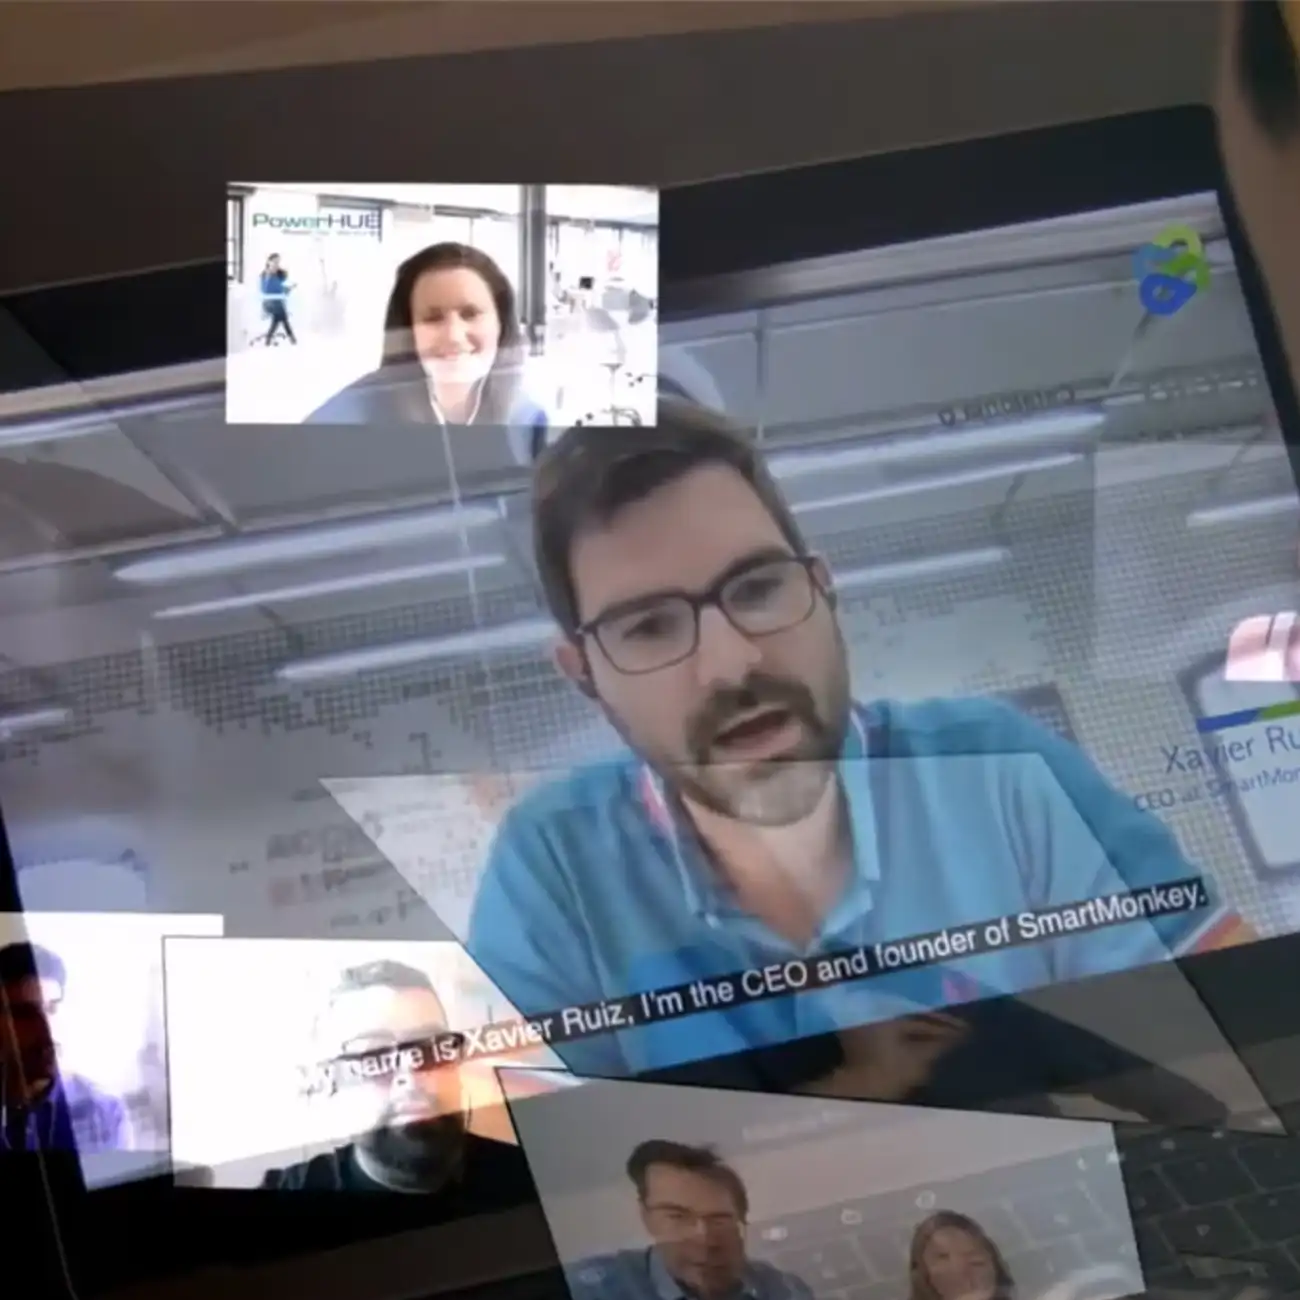 Fotograma del video donde se muestra a un hombre en una teleconferencia con otras personas que se muestran como pequeñas pantallas a su alrededor